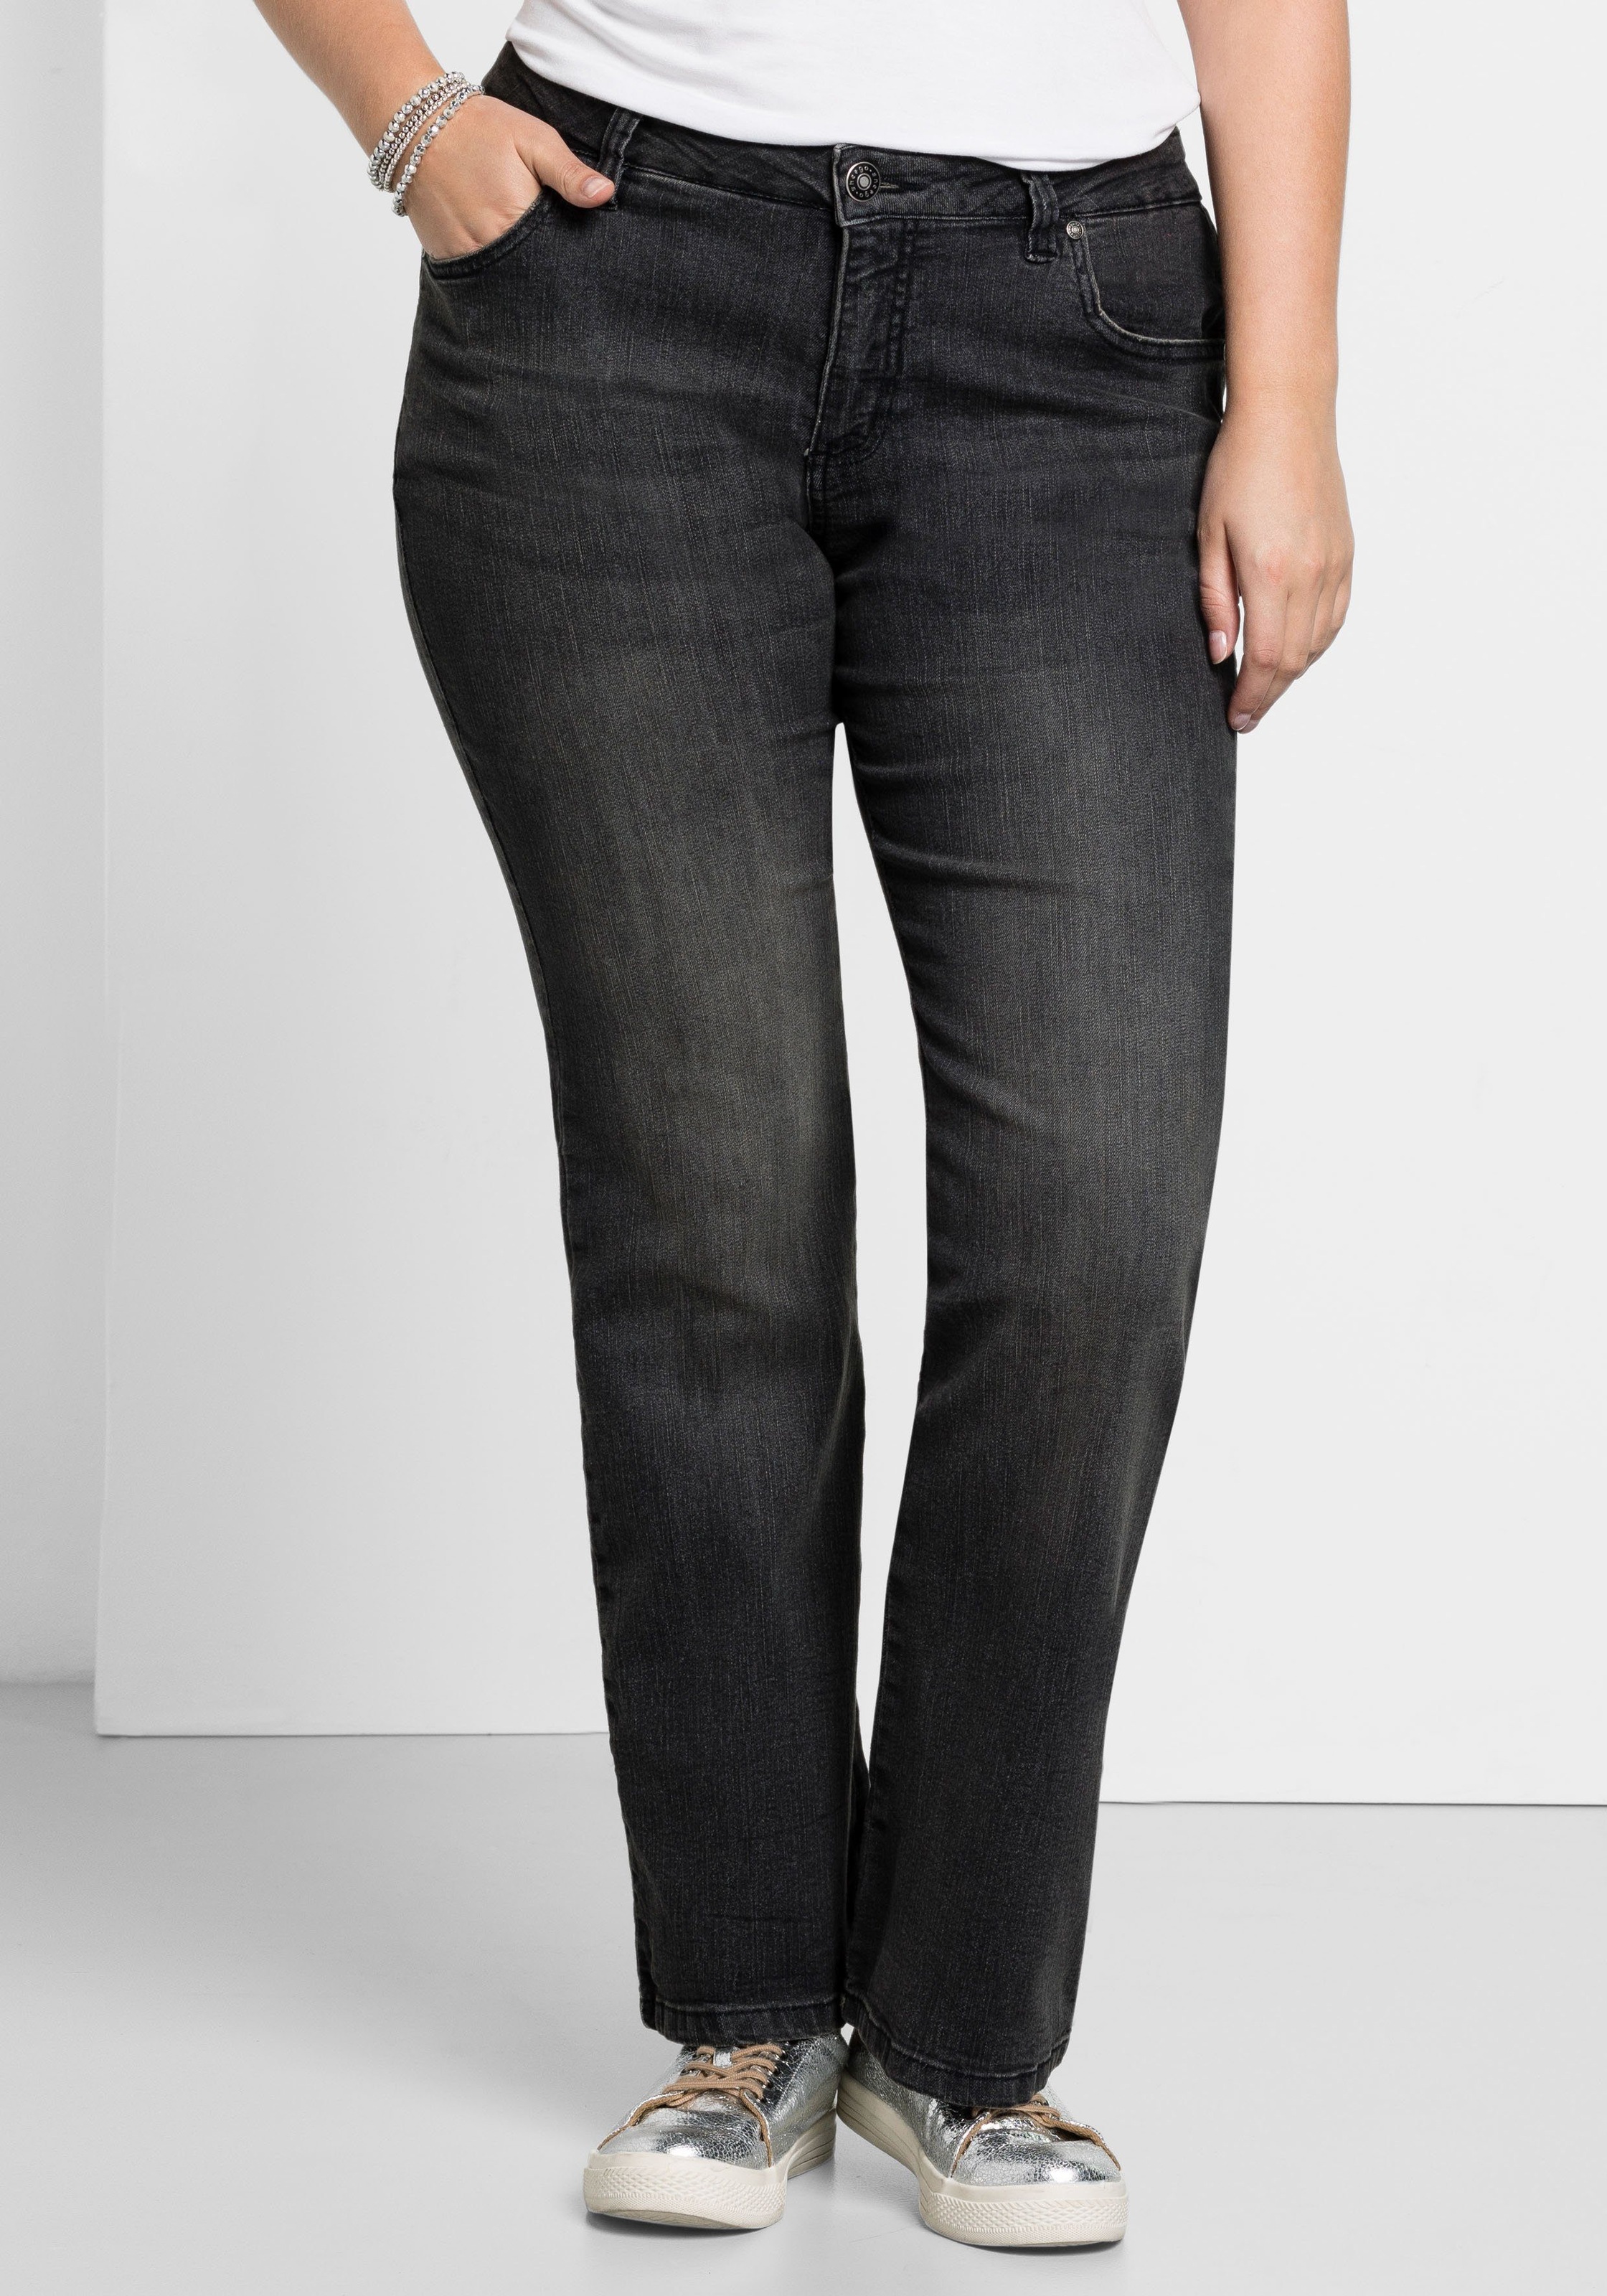 plank Fonkeling Jeugd Modische Jeans für Damen online kaufen ⇒ ottoversand.at